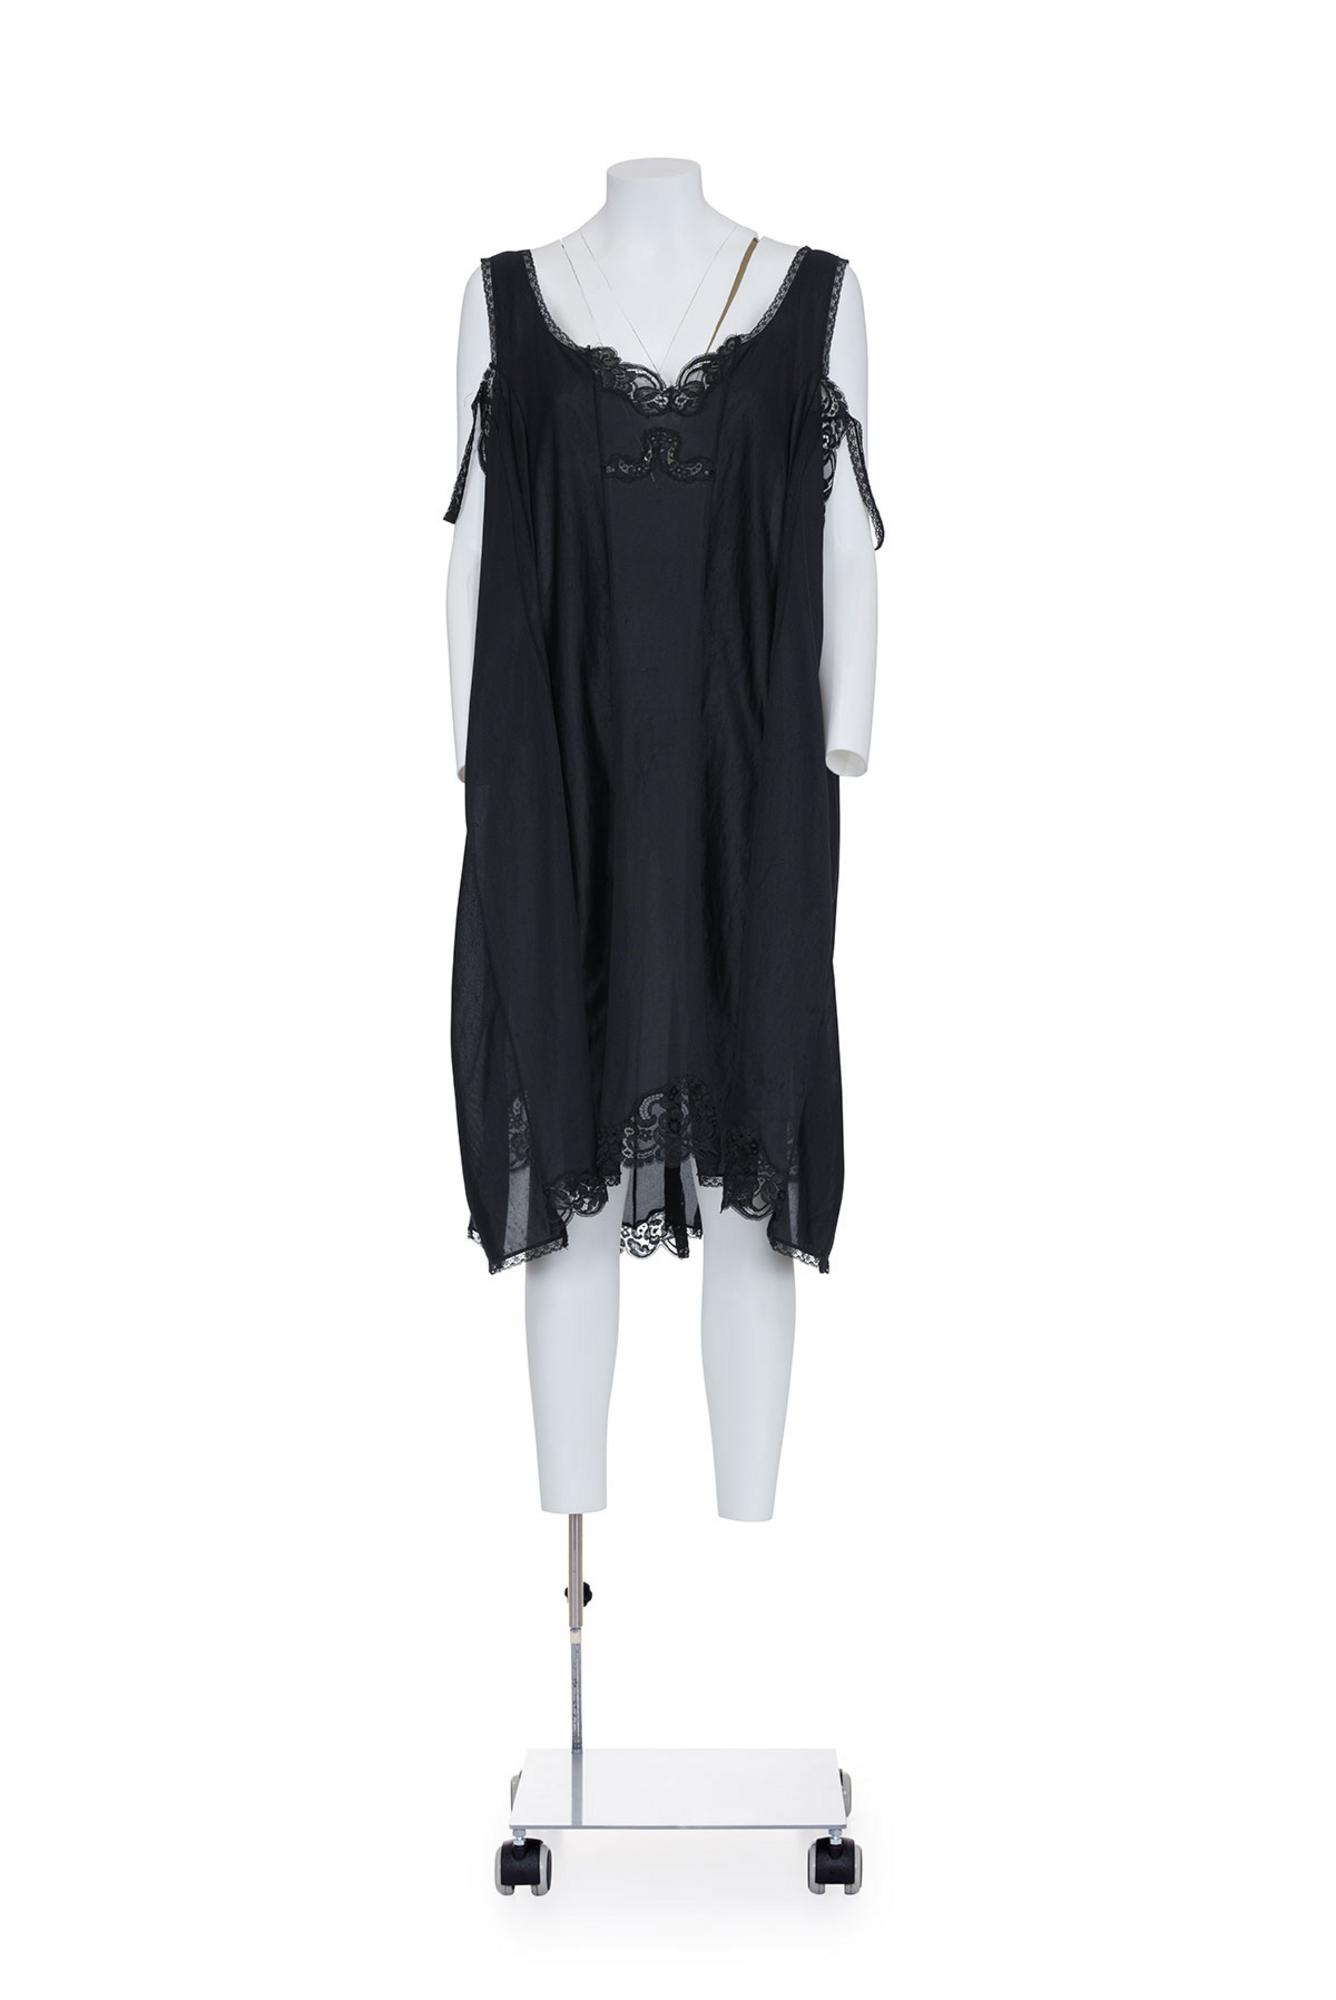 MAISON MARTIN MARGIELA Rare and iconic artisanal oversize lingerie dress...